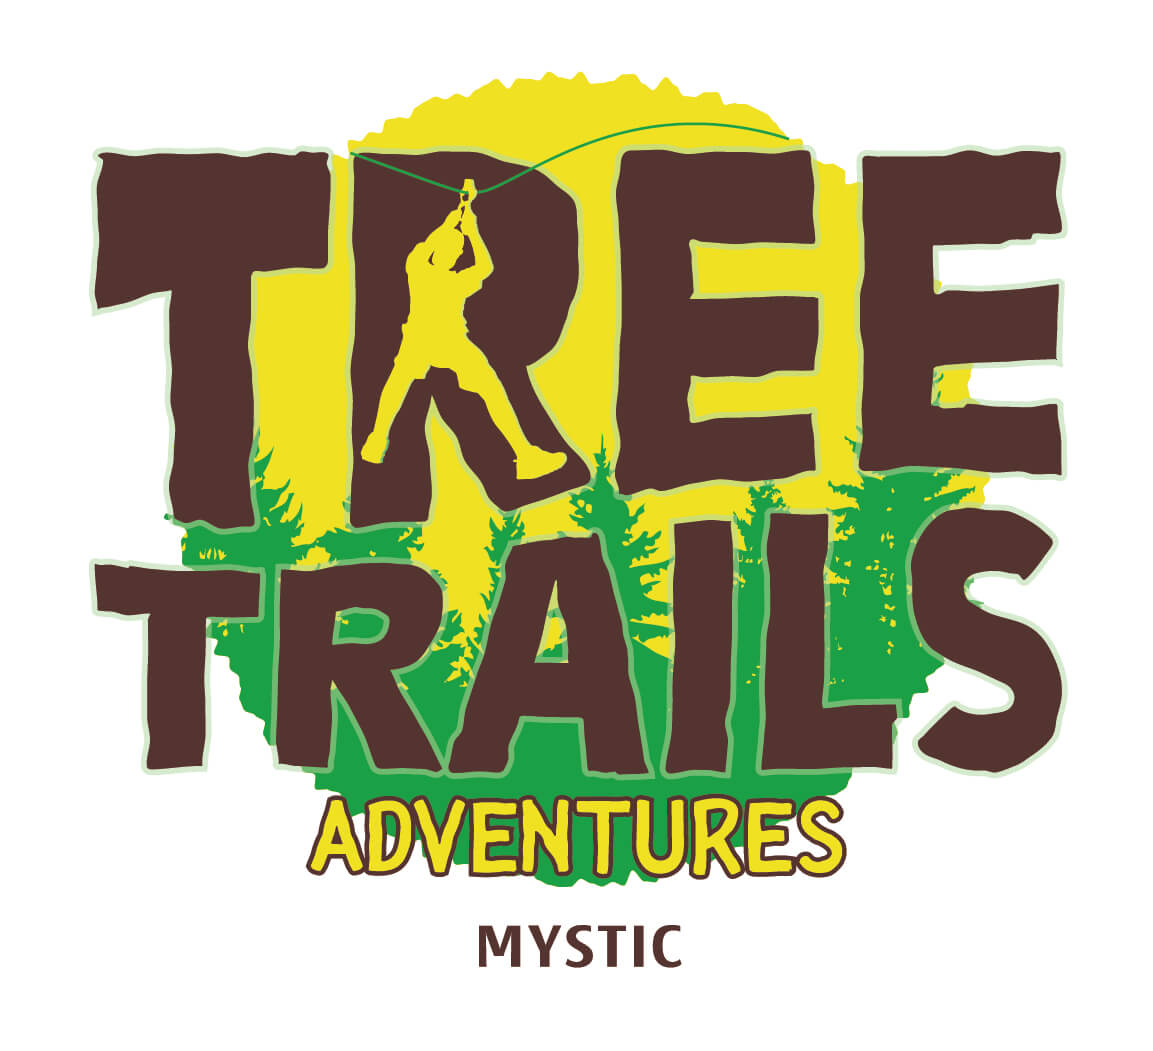 Tree Trails